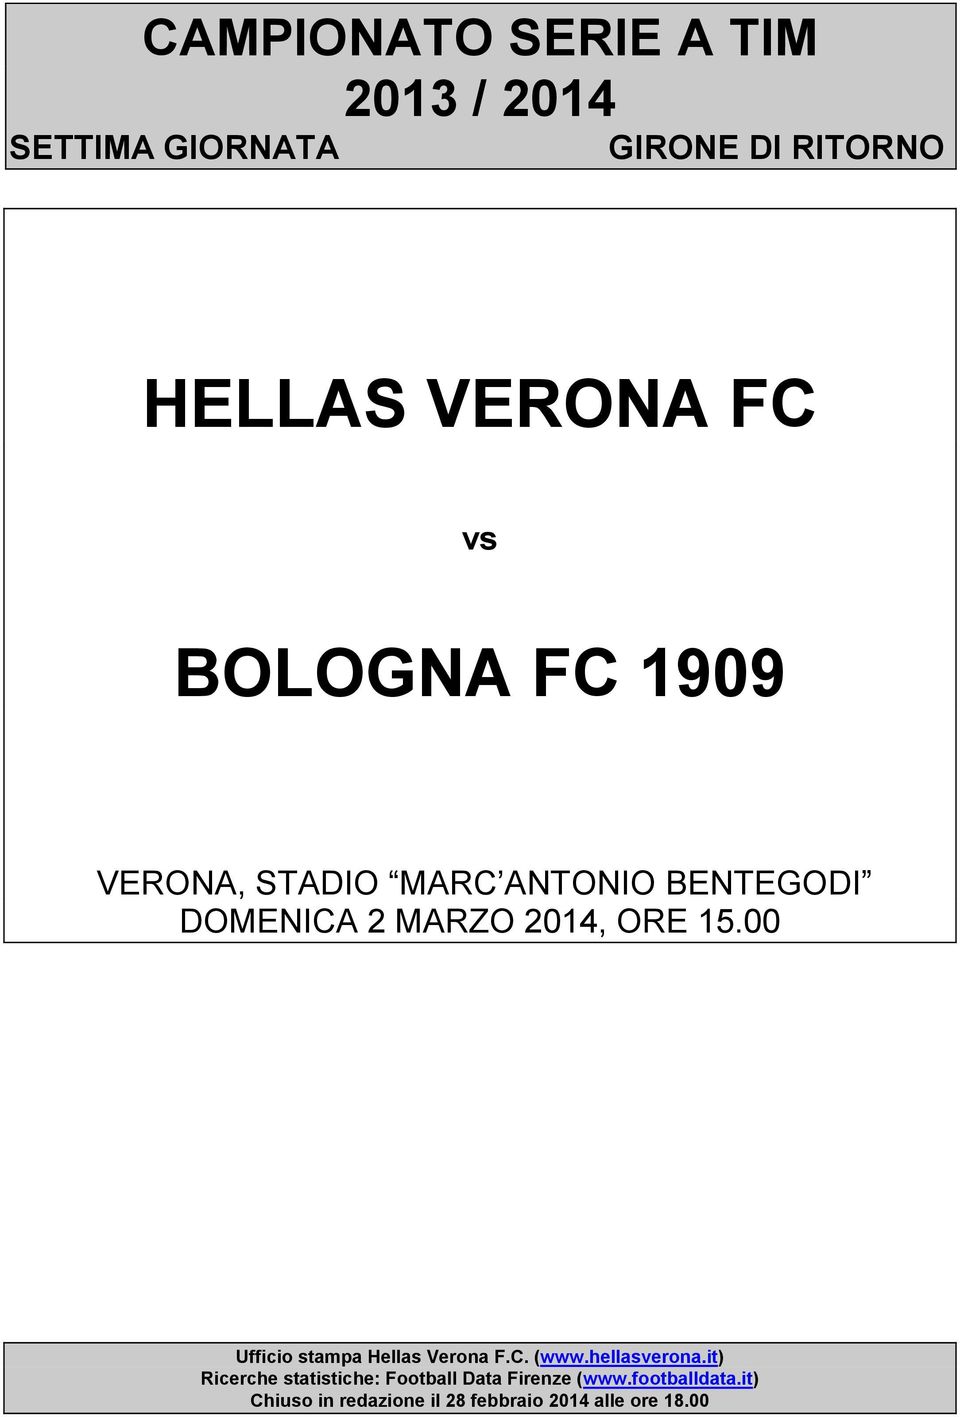 Ufficio stampa Hellas Verona F.C. (www.hellasverona.